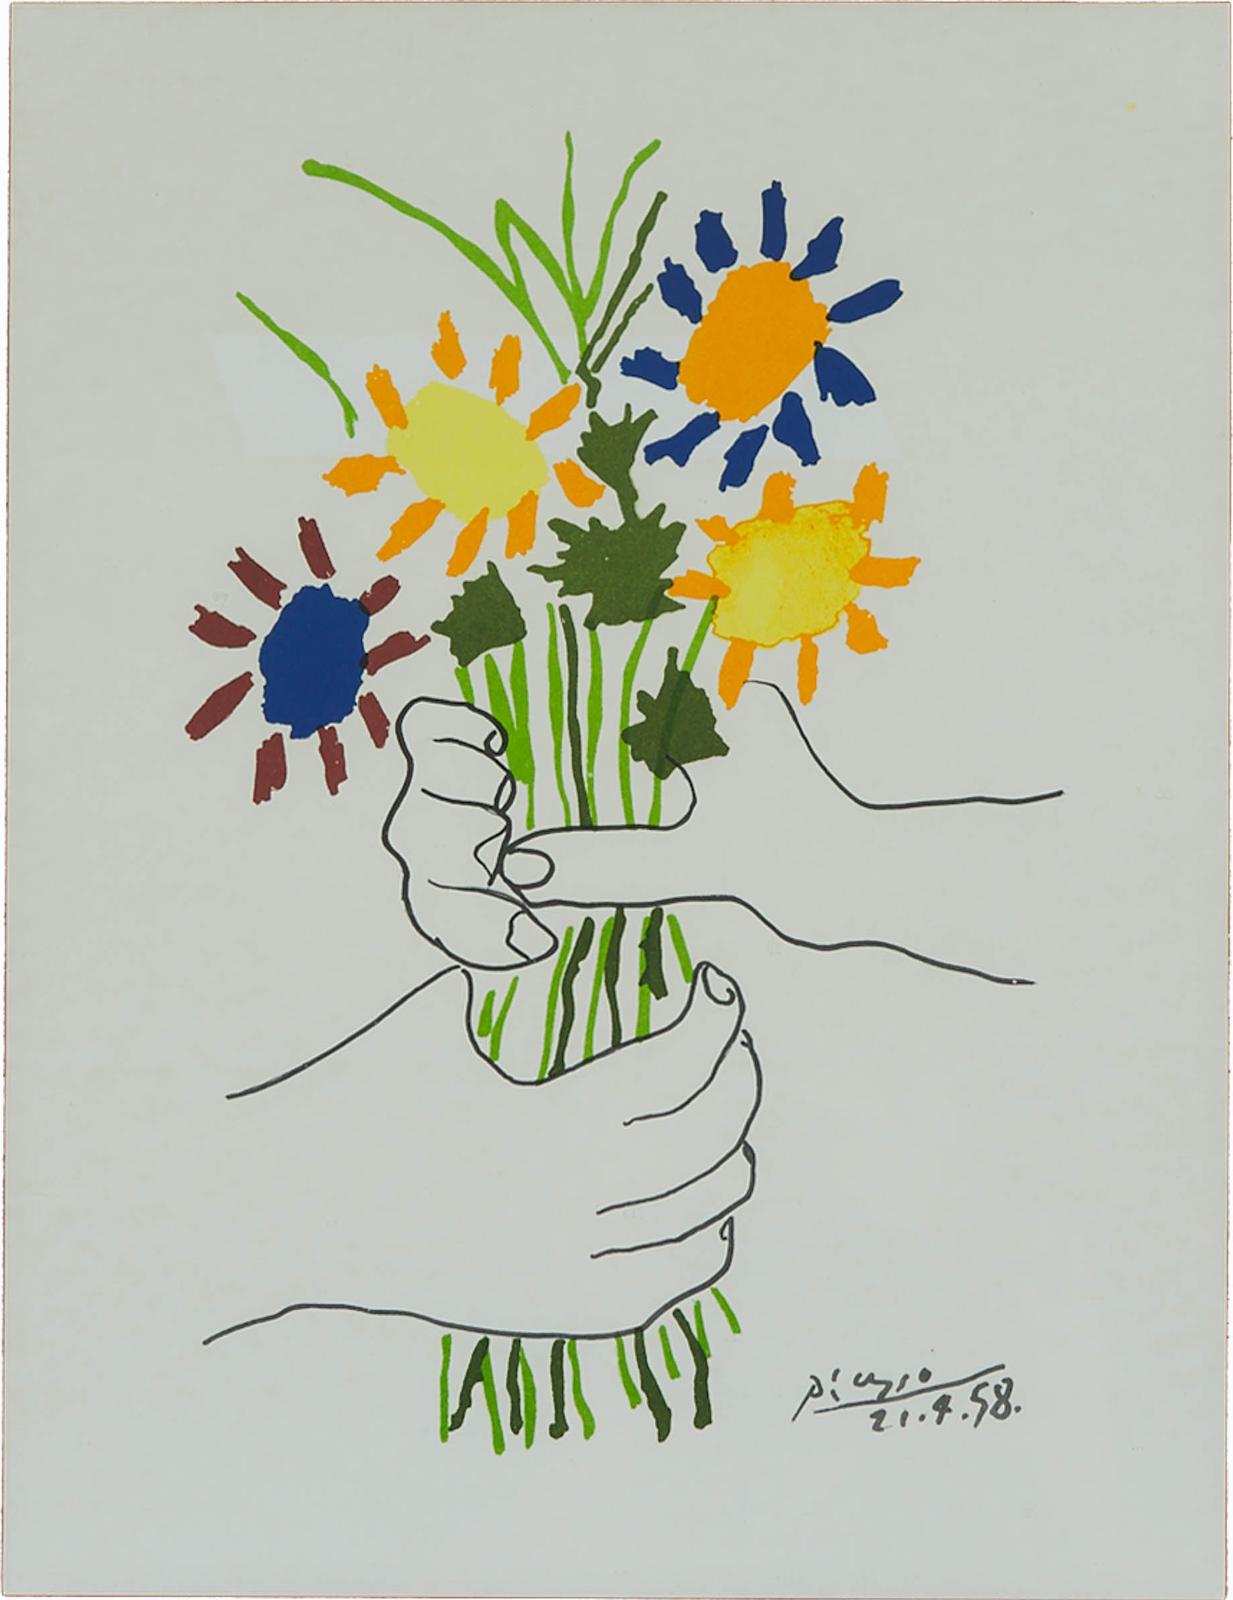 Pablo Ruiz Picasso (1881-1973) - Bouquet Of Peace, 1958